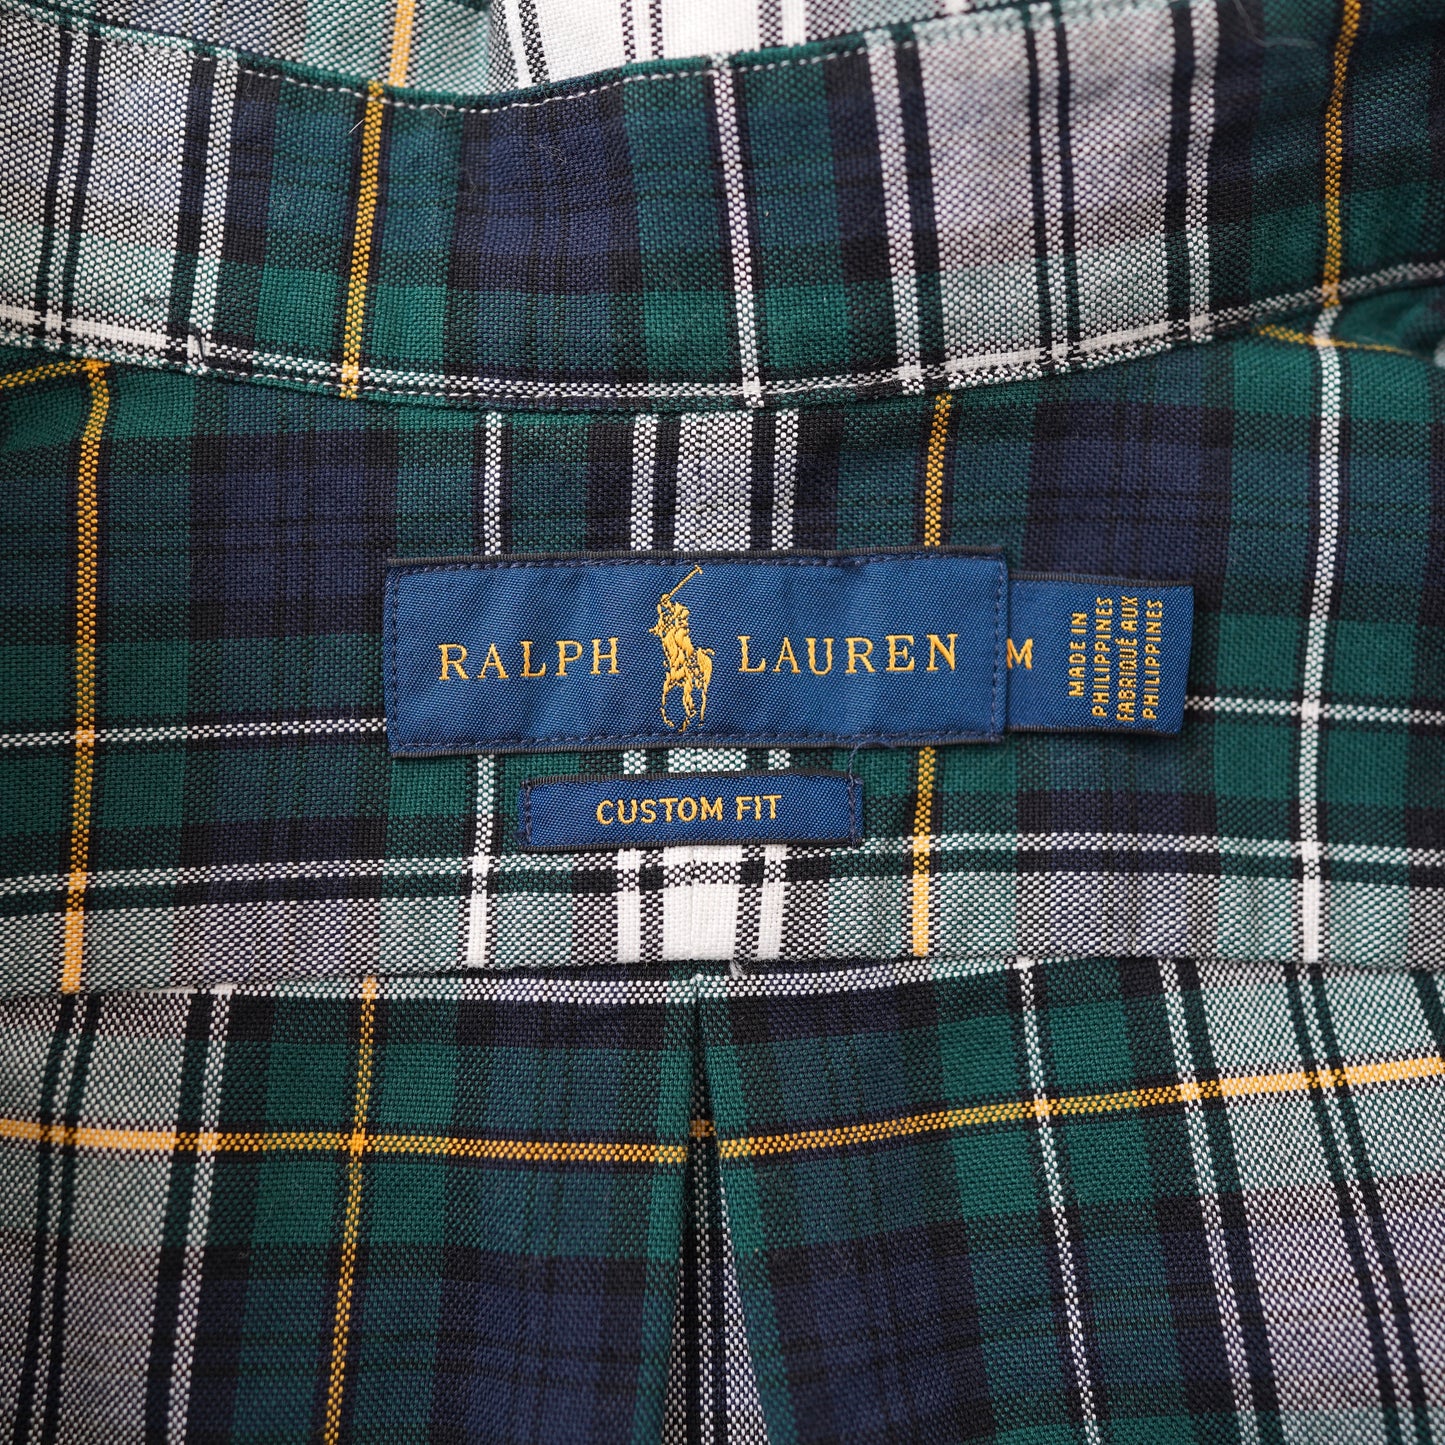 Ralph Lauren Check shirt